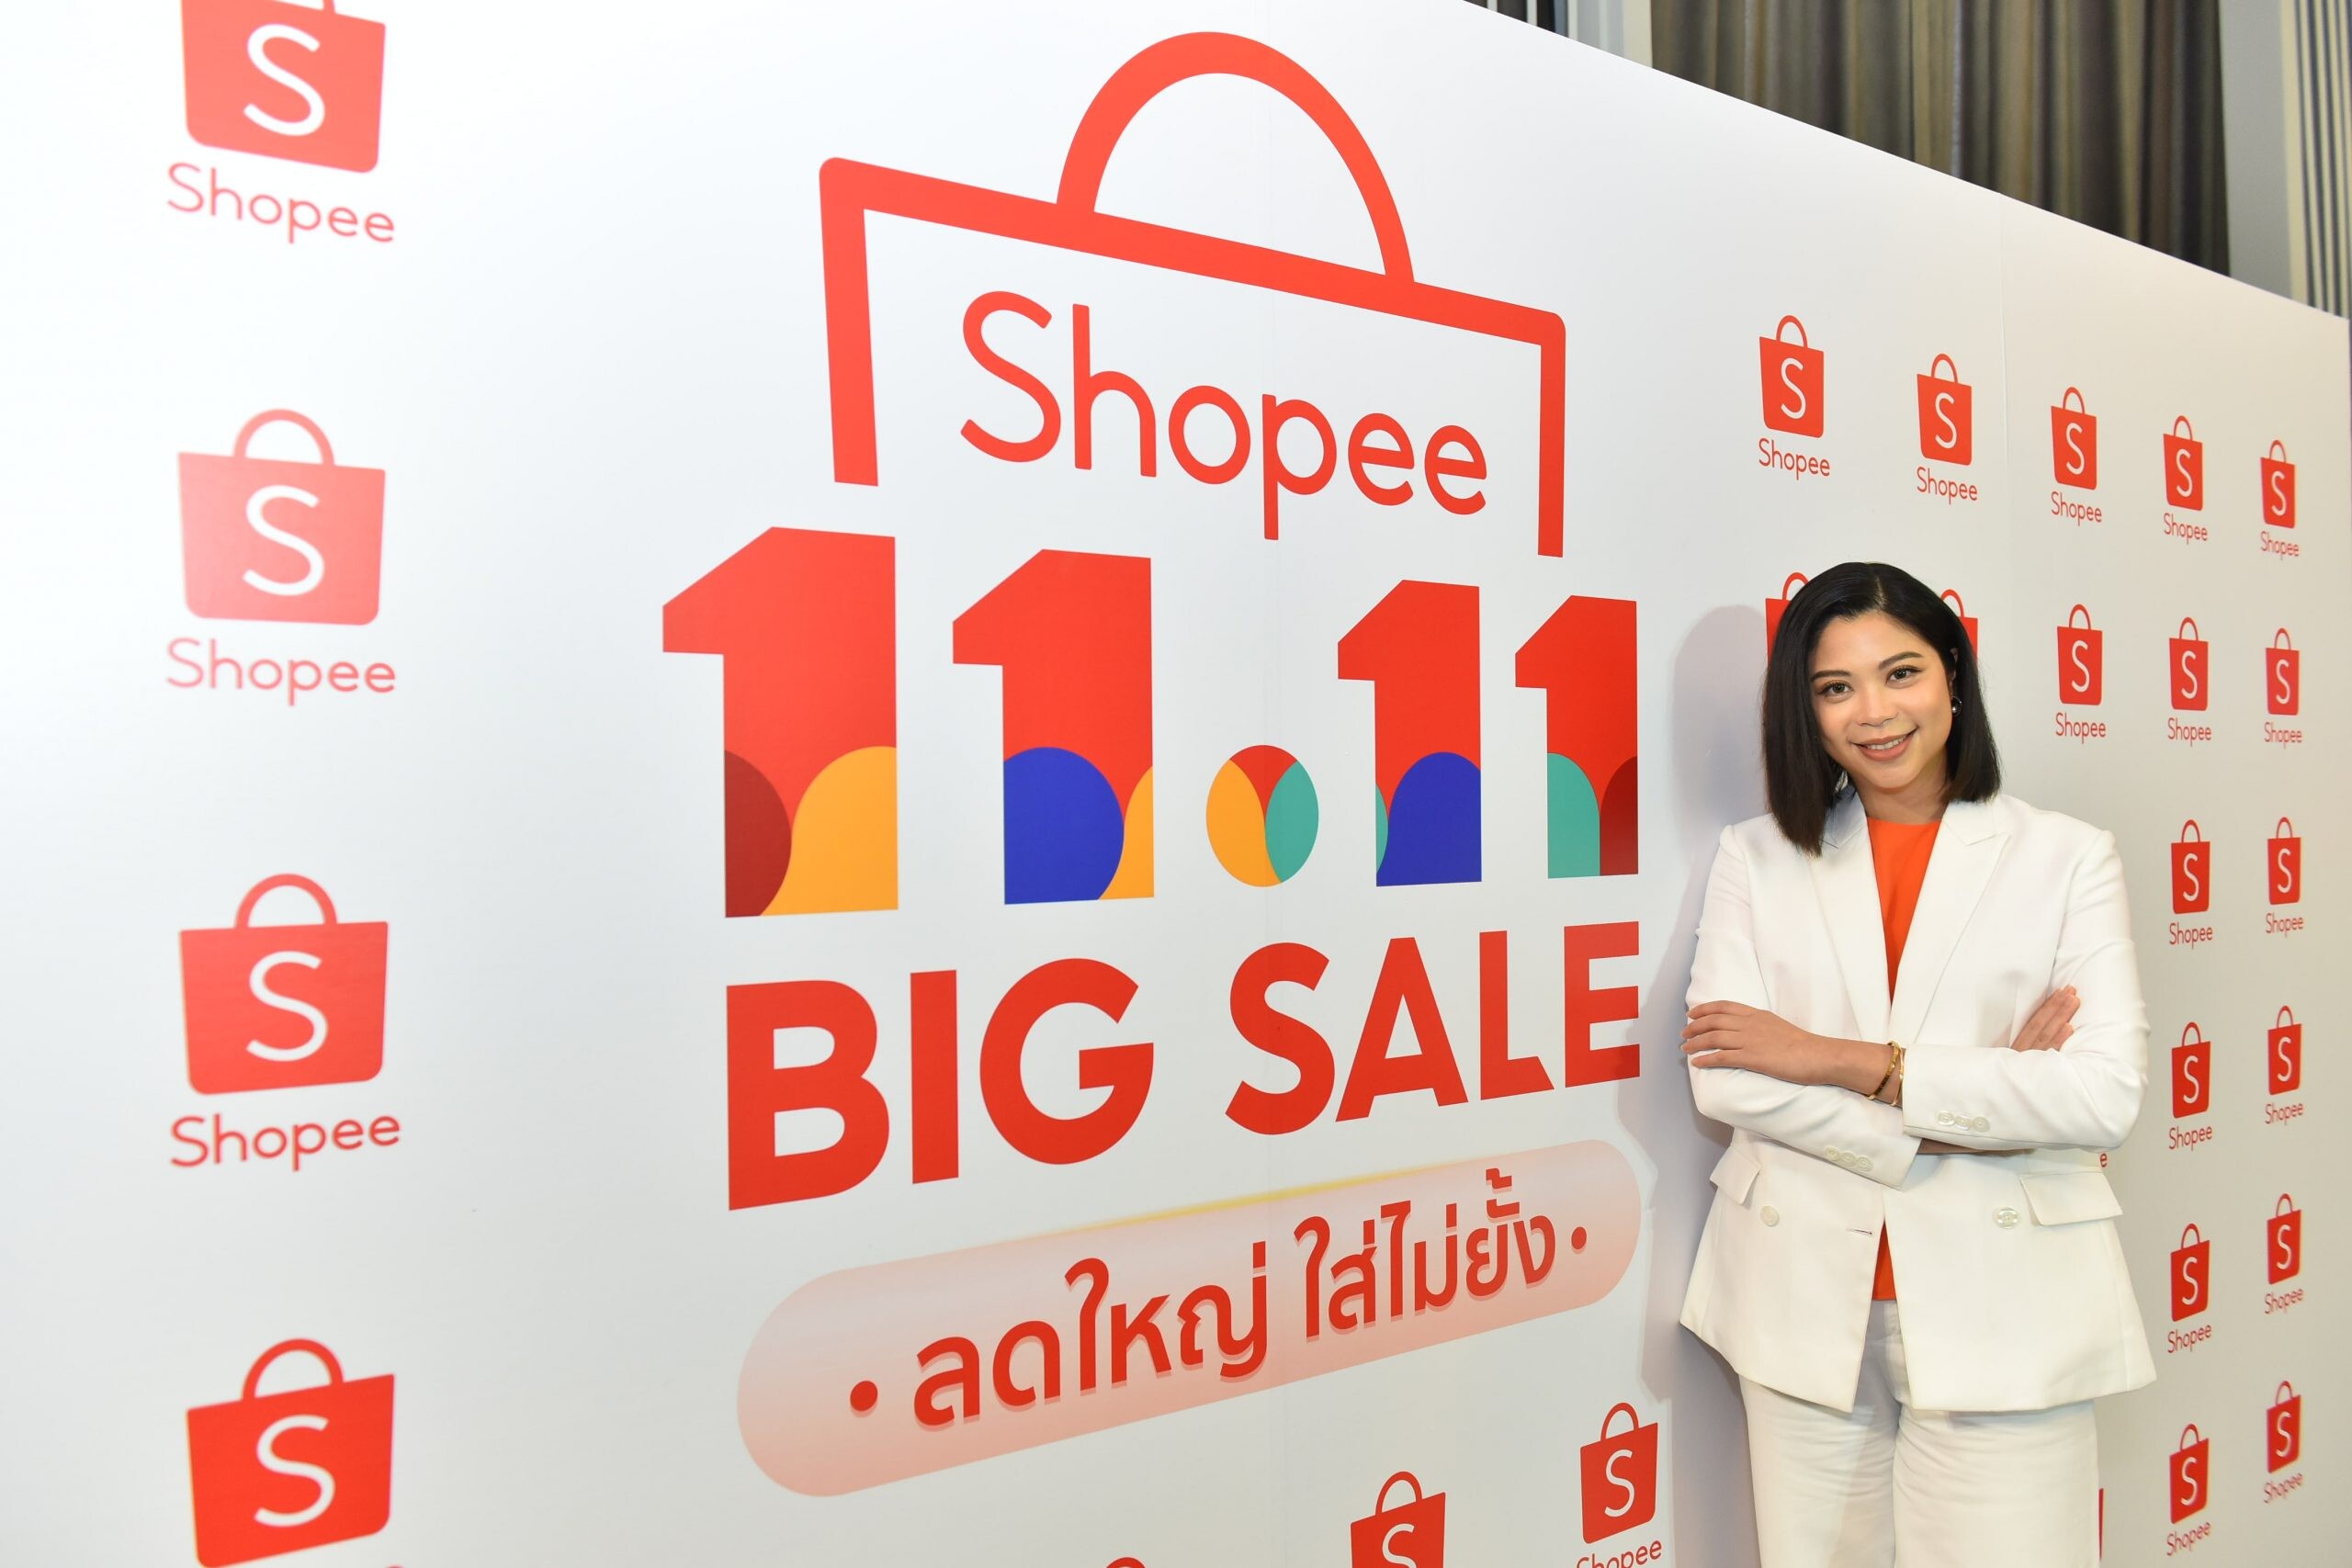 ช้อปปี้ ปลุกพลังนักช้อป พร้อมสร้างการเติบโตให้กับทุกธุรกิจ ด้วยยอดขายสินค้ามากกว่า 2 พันล้านชิ้น ในช่วงอภิมหามหกรรมแคมเปญ Shopee 11.11 Big Sale